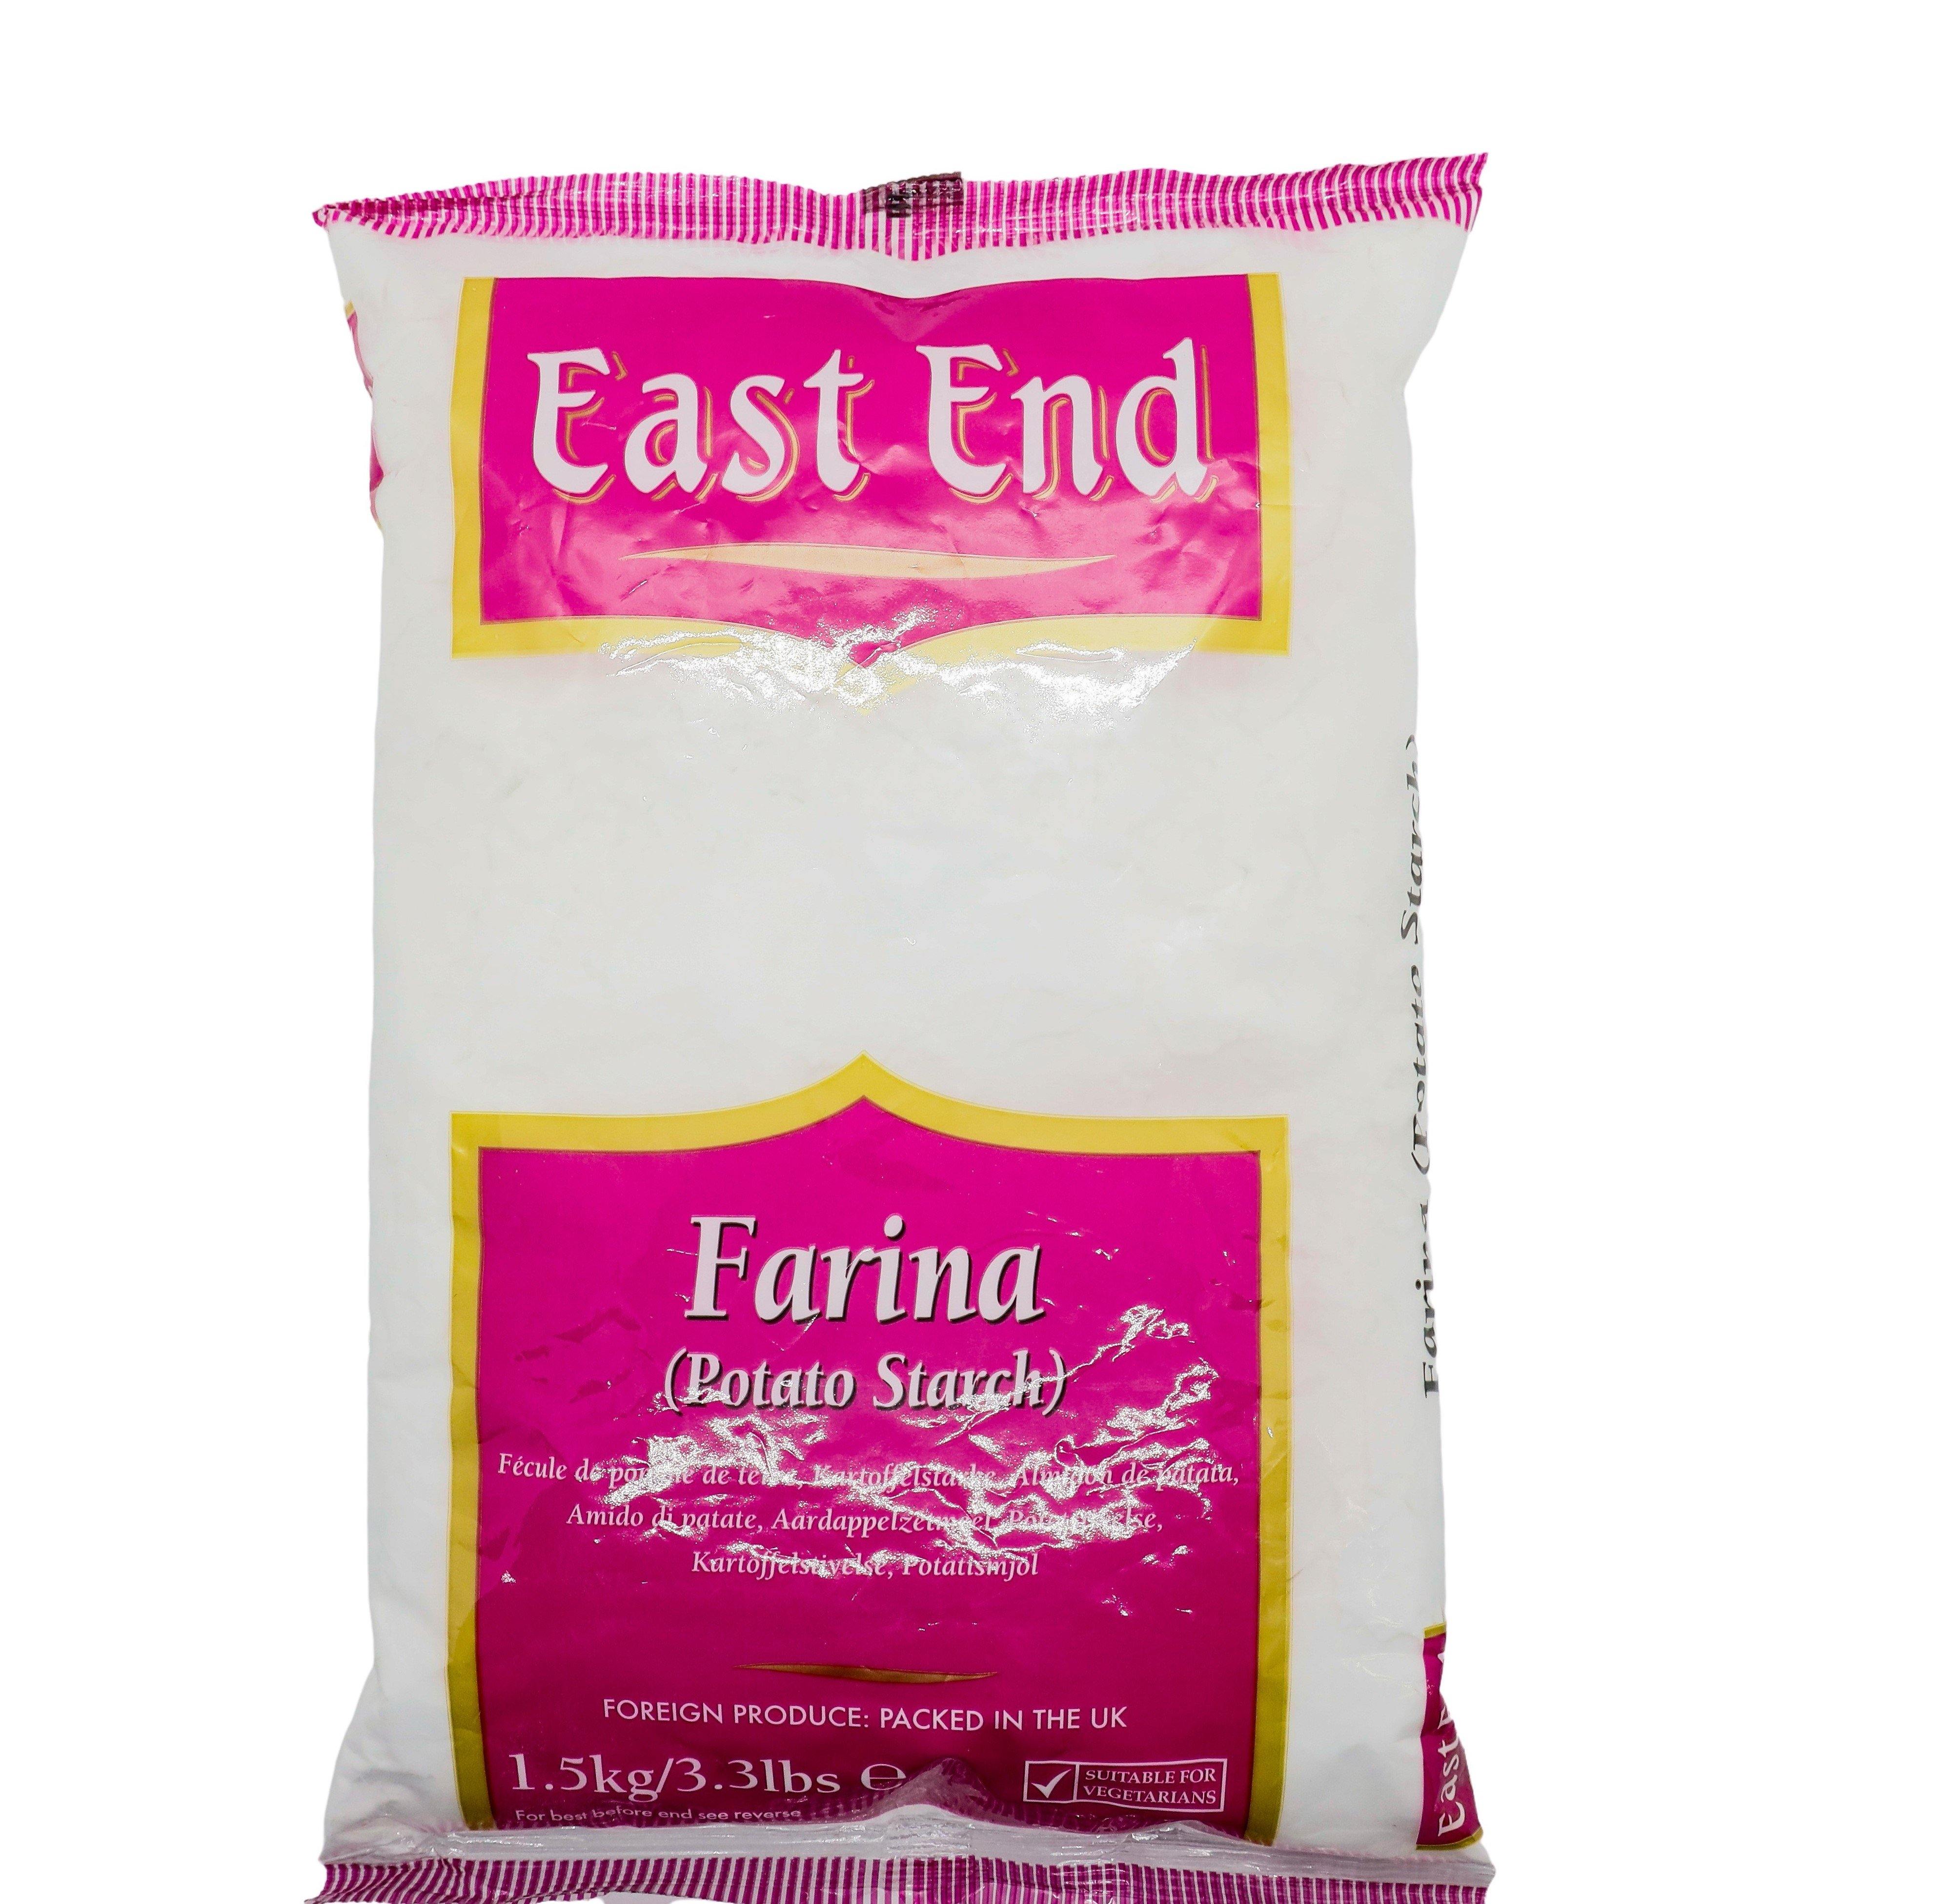 East End Potato Starch @ SaveCo Online Ltd